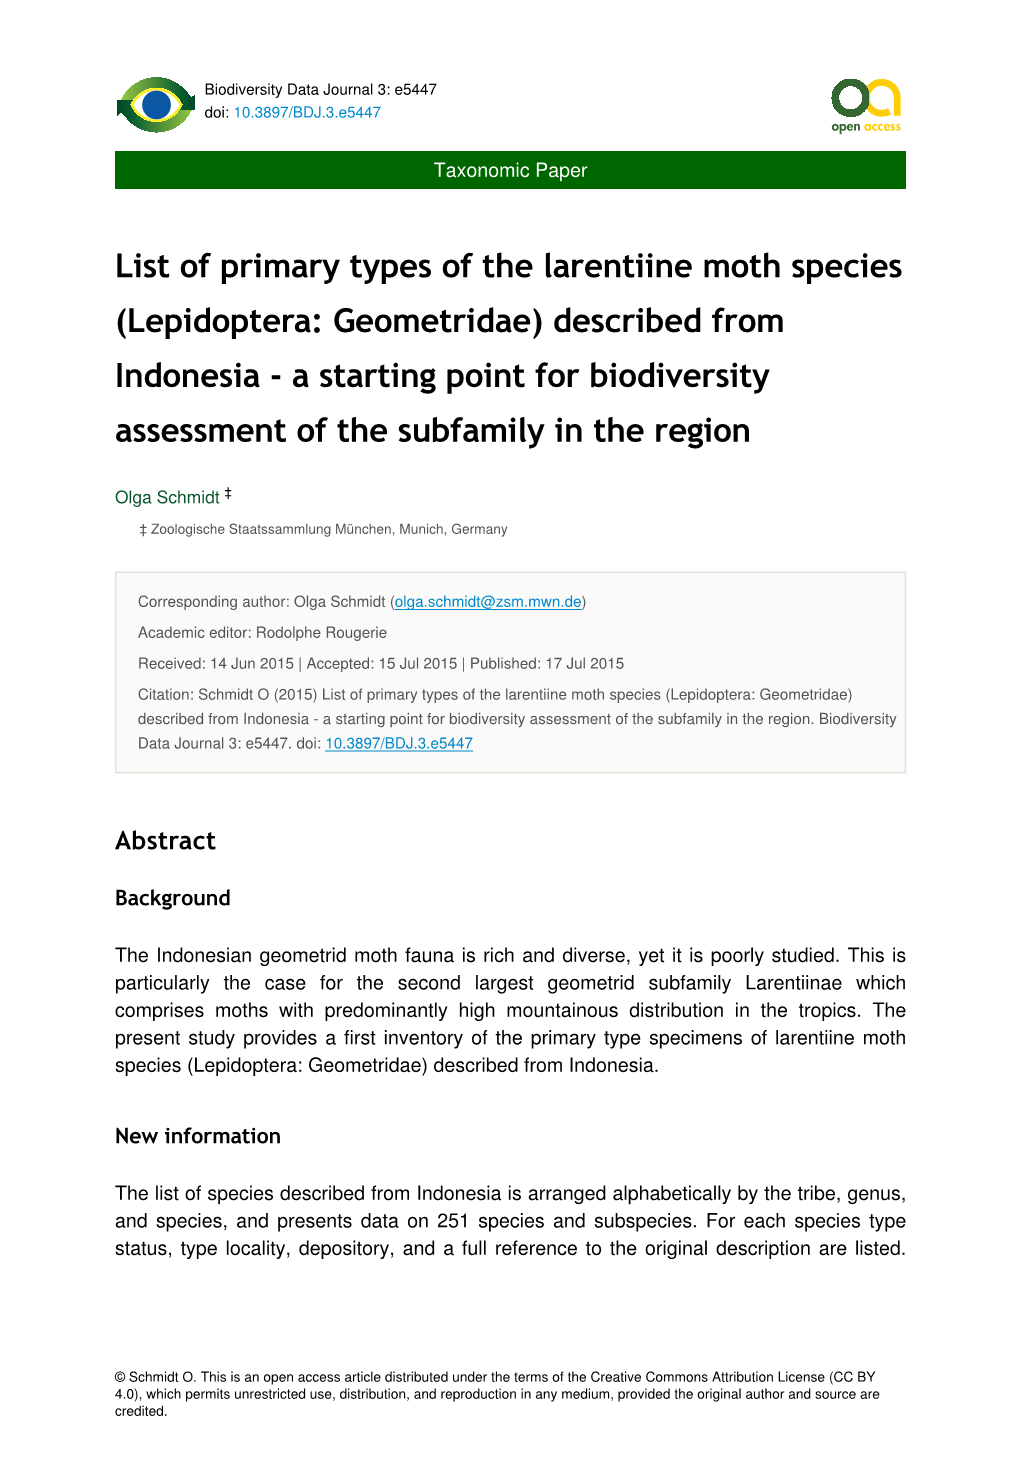 List of Primary Types of the Larentiine Moth Species